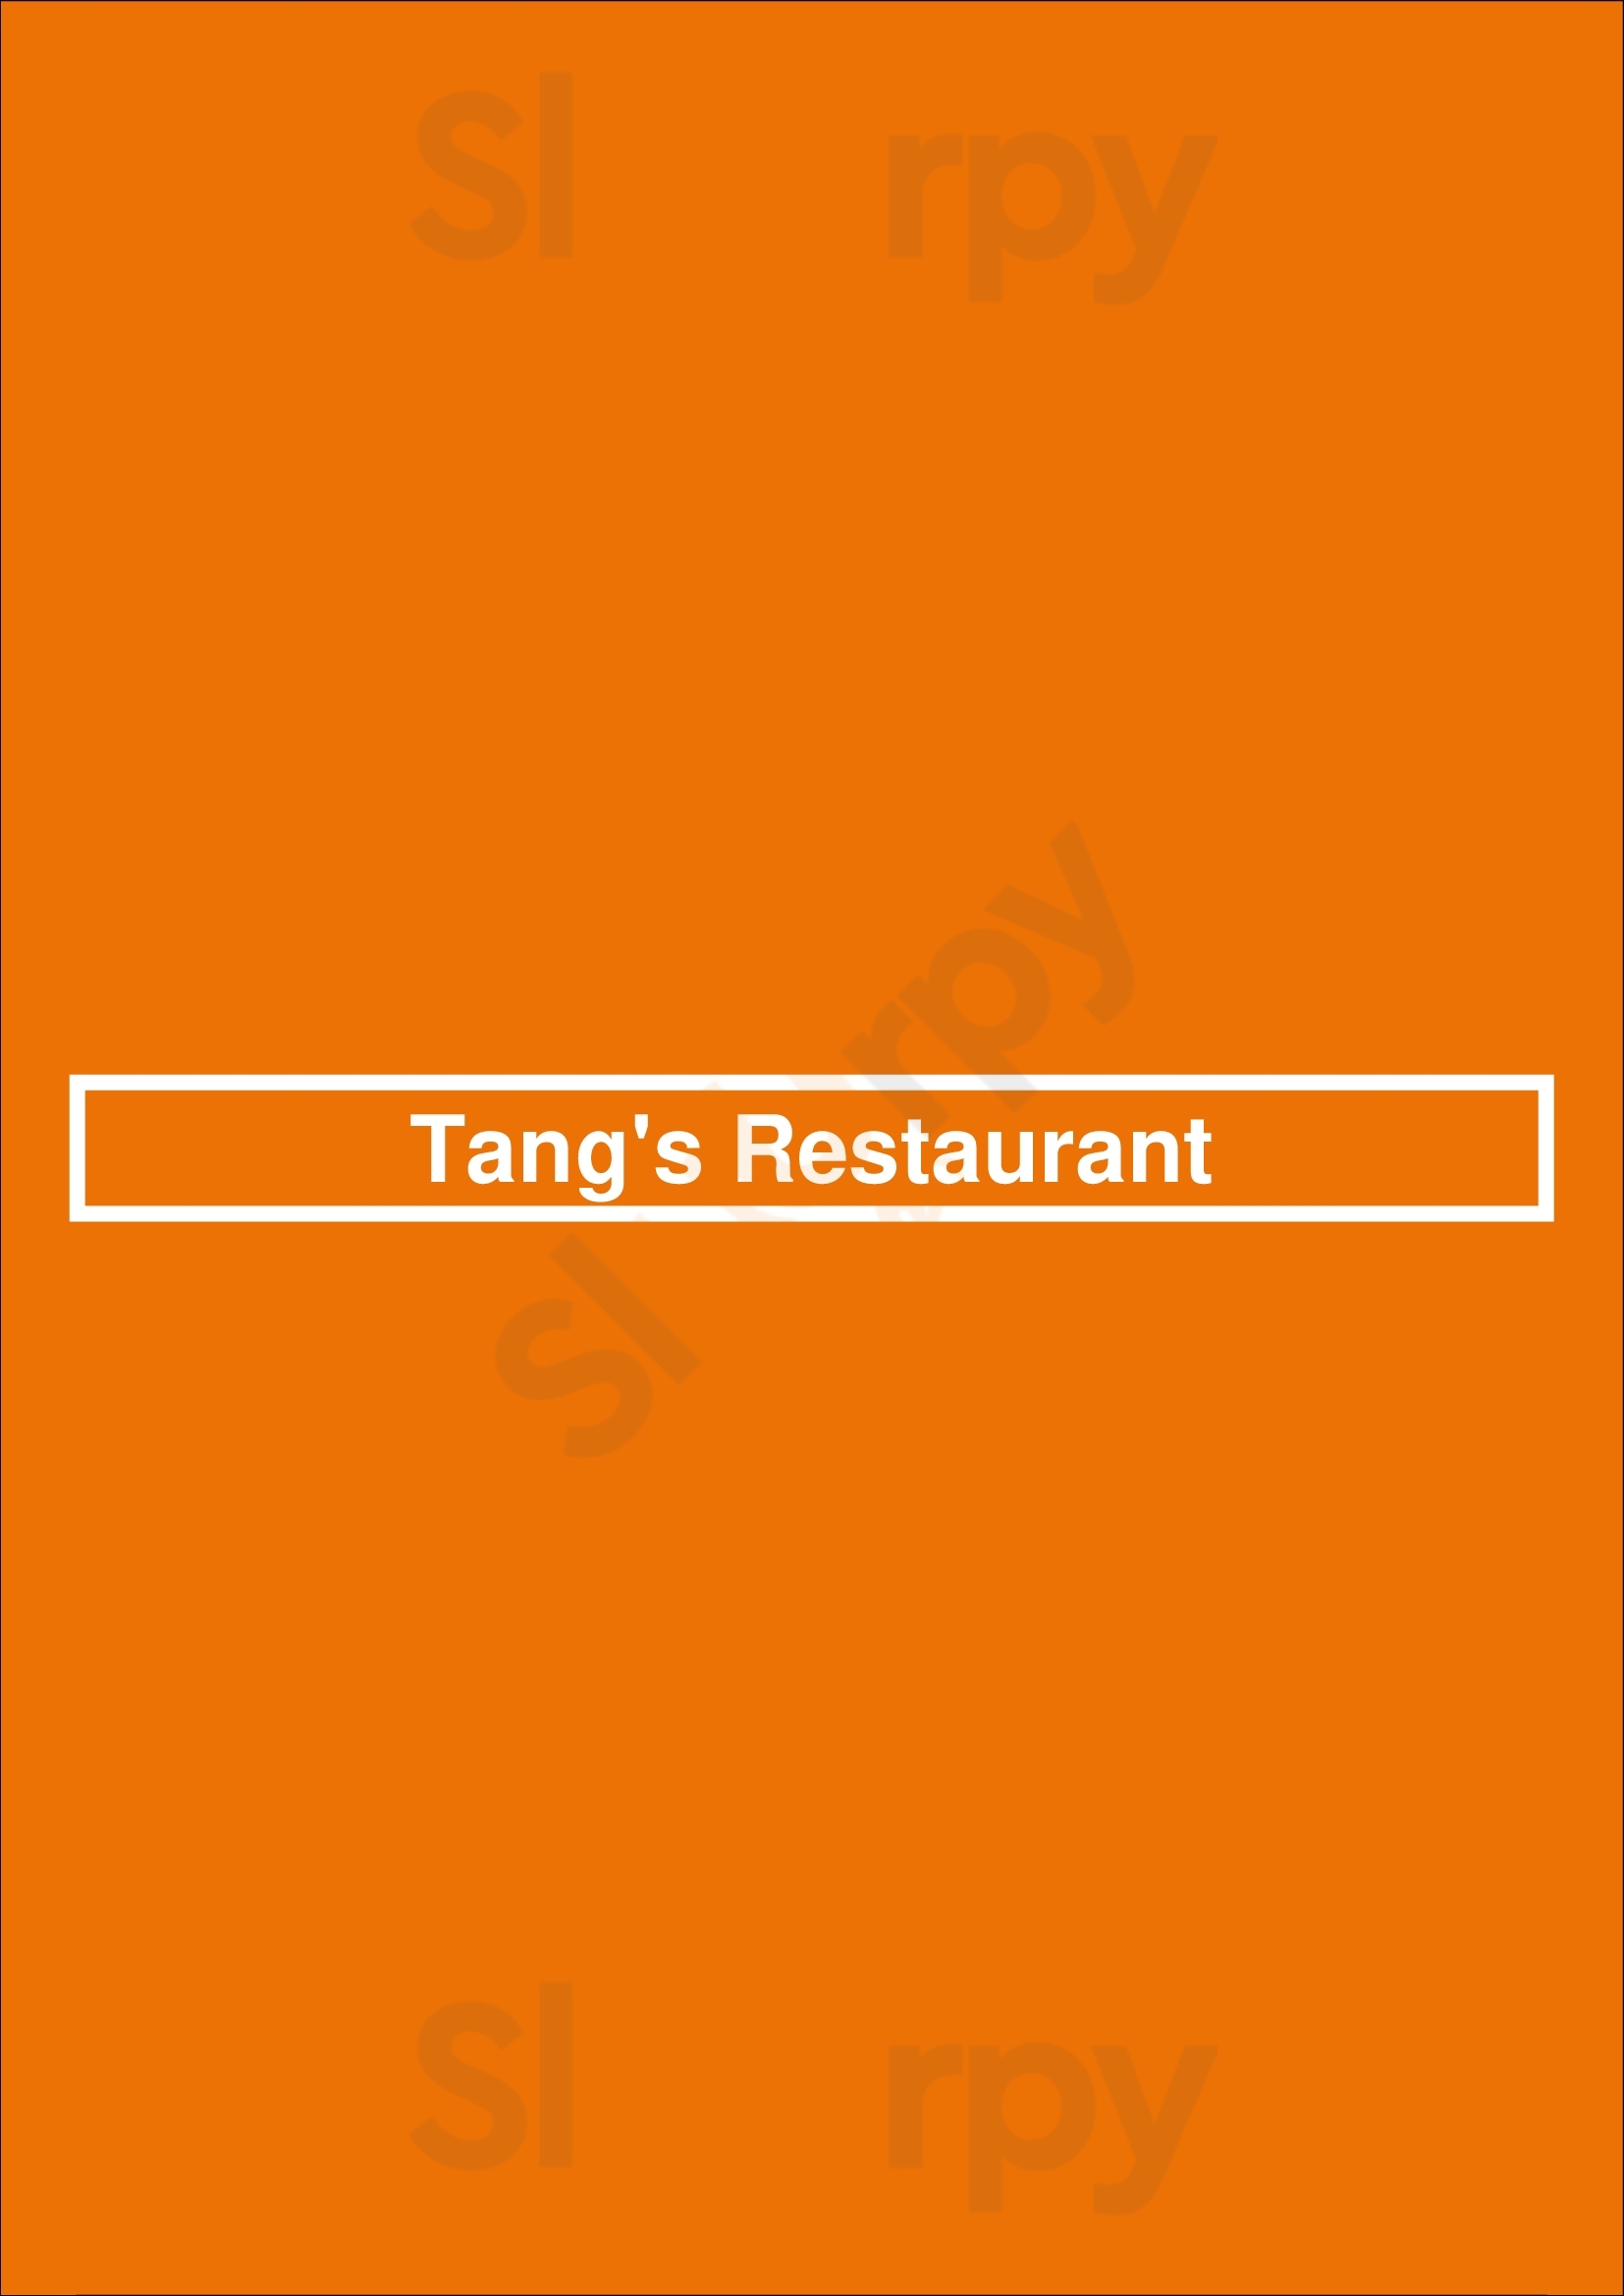 Tang's Restaurant Anvers Menu - 1